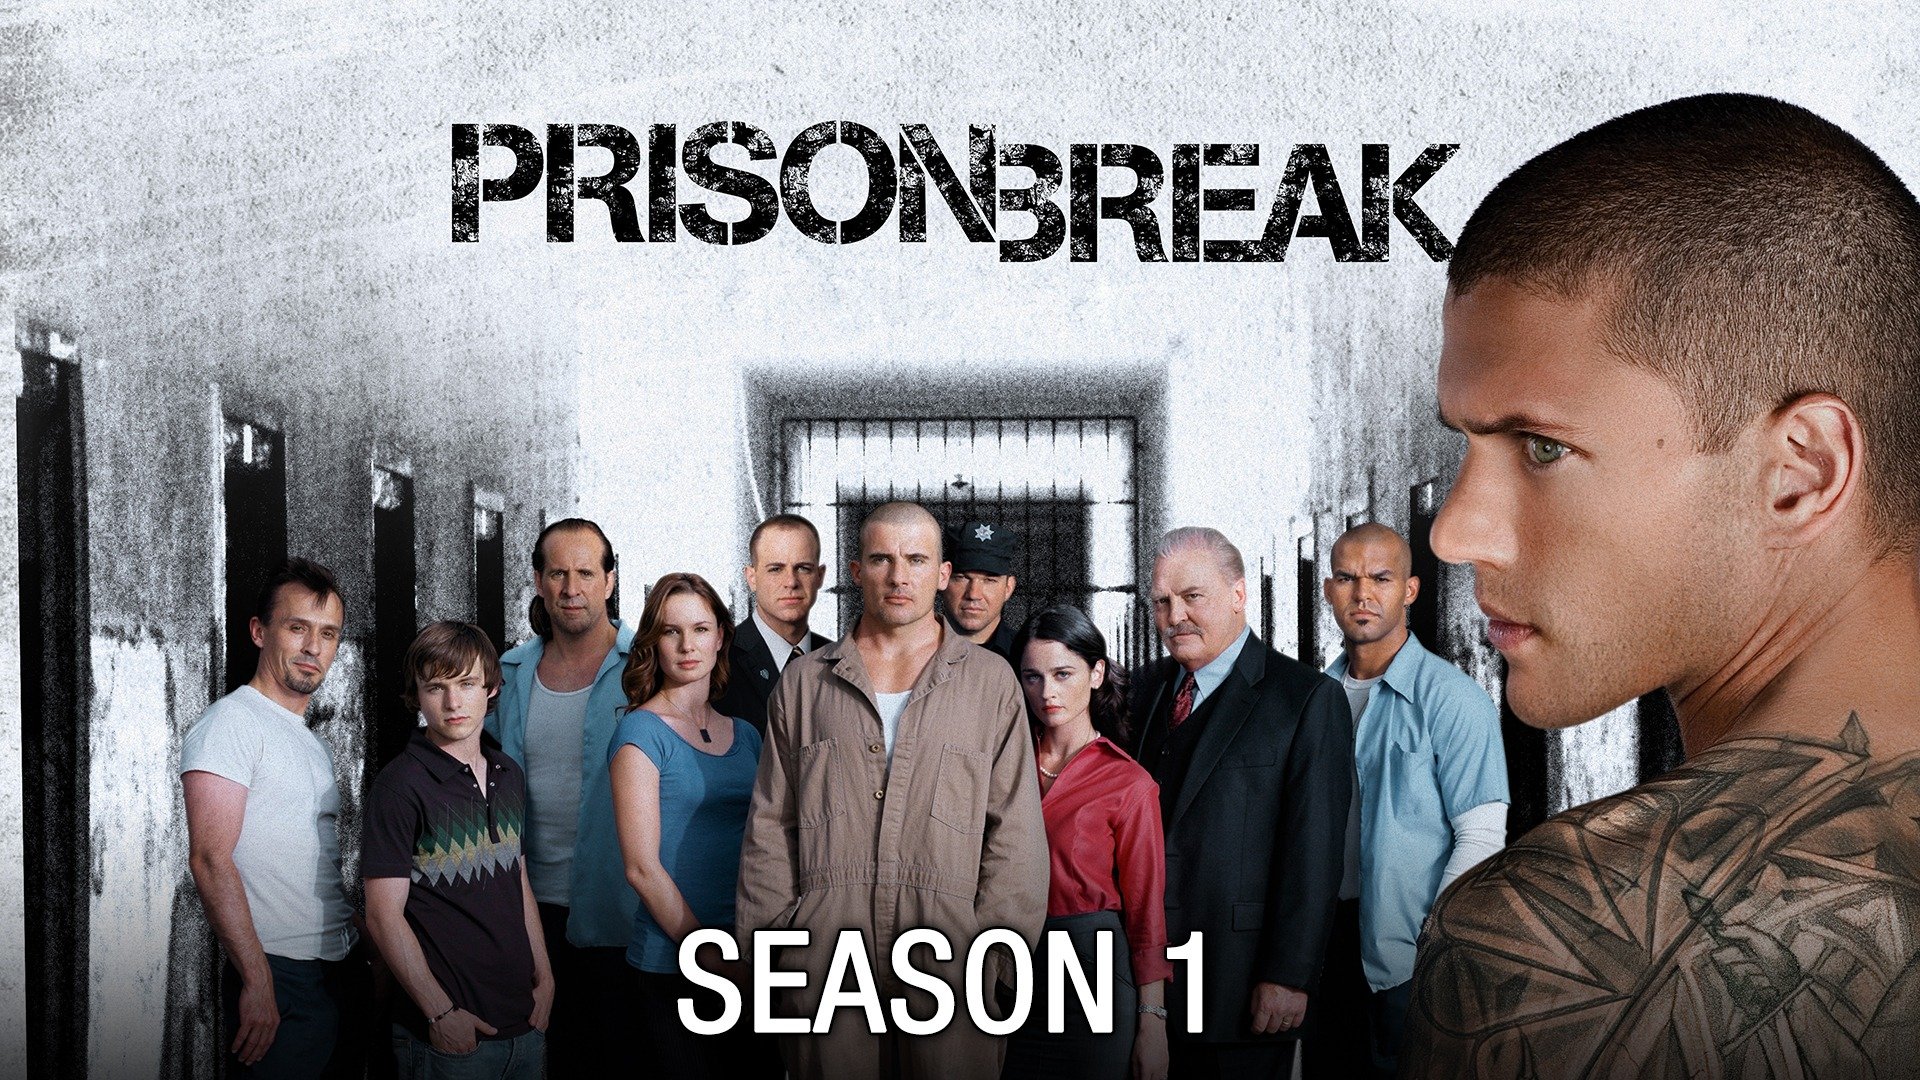 prison break season 1 episode 1 free online